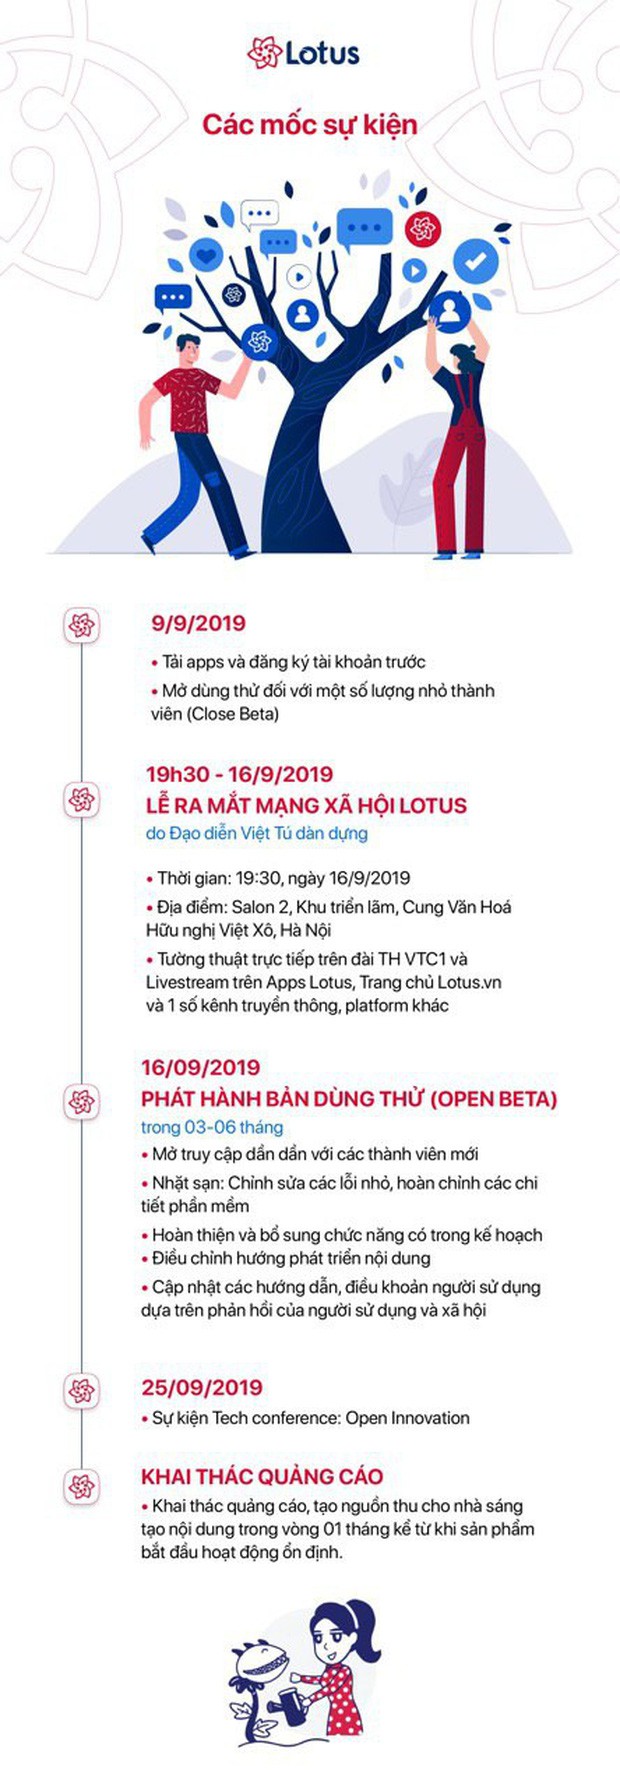 Lễ ra mắt MXH Lotus chính là sự kiện hot nhất tháng 9 này: Gây bão từ ngay chiếc thiệp mời ma thuật, dự kiến quy tụ hàng trăm celebs, creators hàng đầu Việt Nam - Ảnh 12.